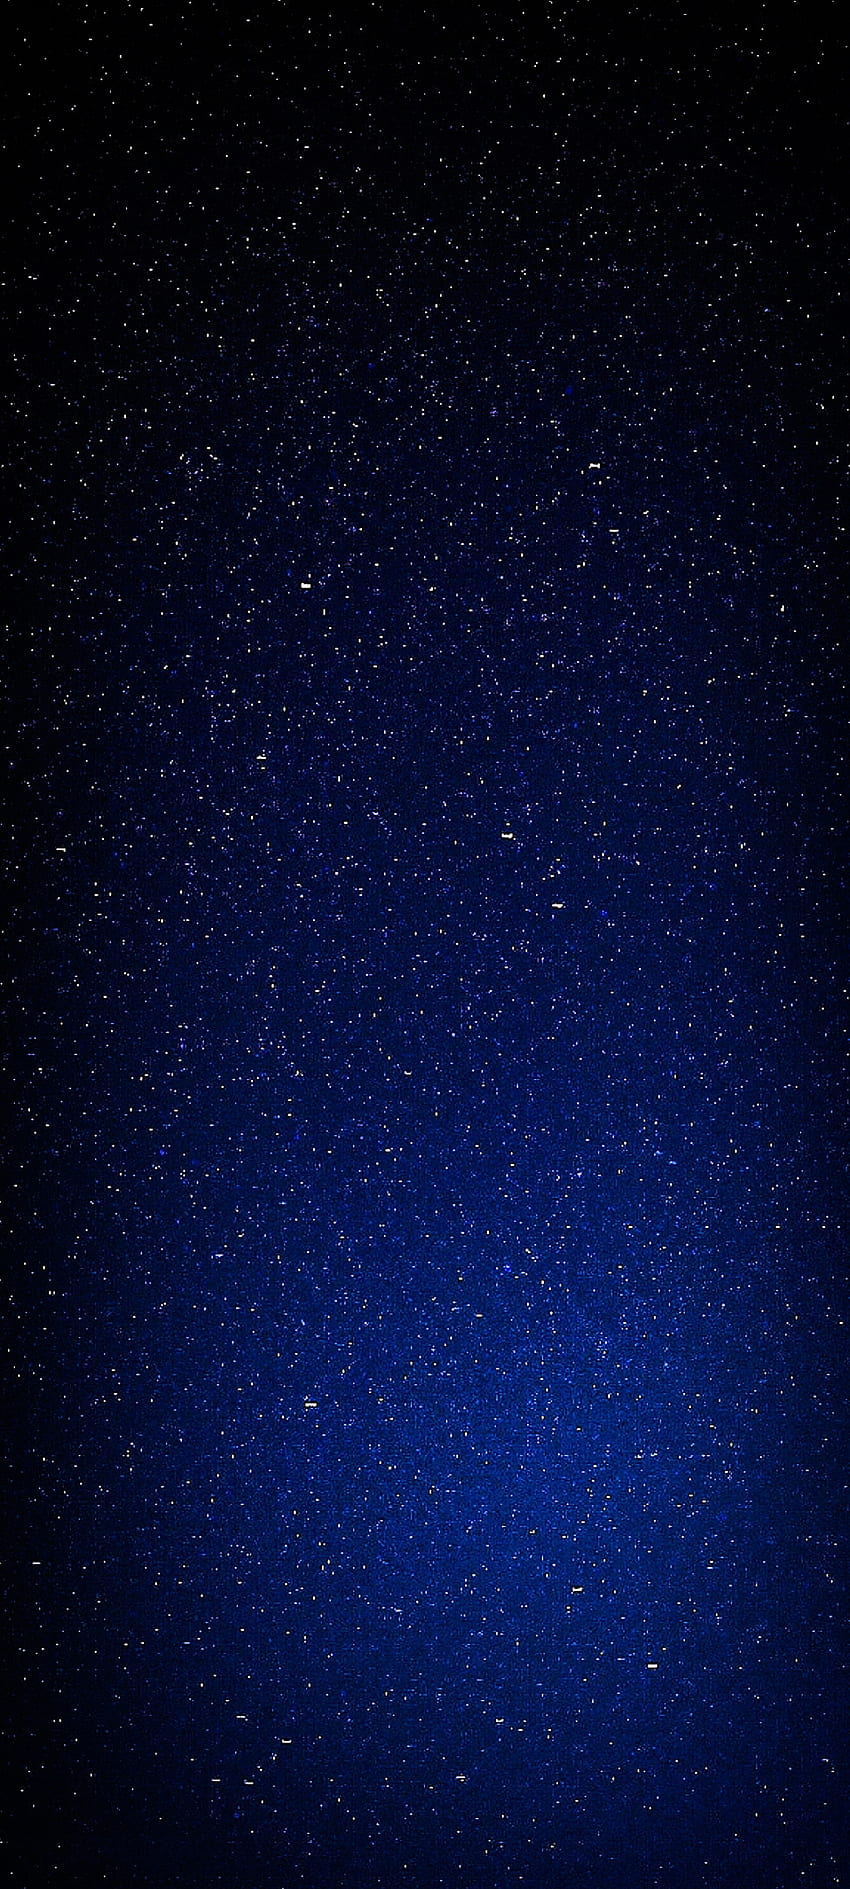 Bintang Luar Angkasa, Galaksi, langit, baru, terbaru, biru, gelap, bintang wallpaper ponsel HD